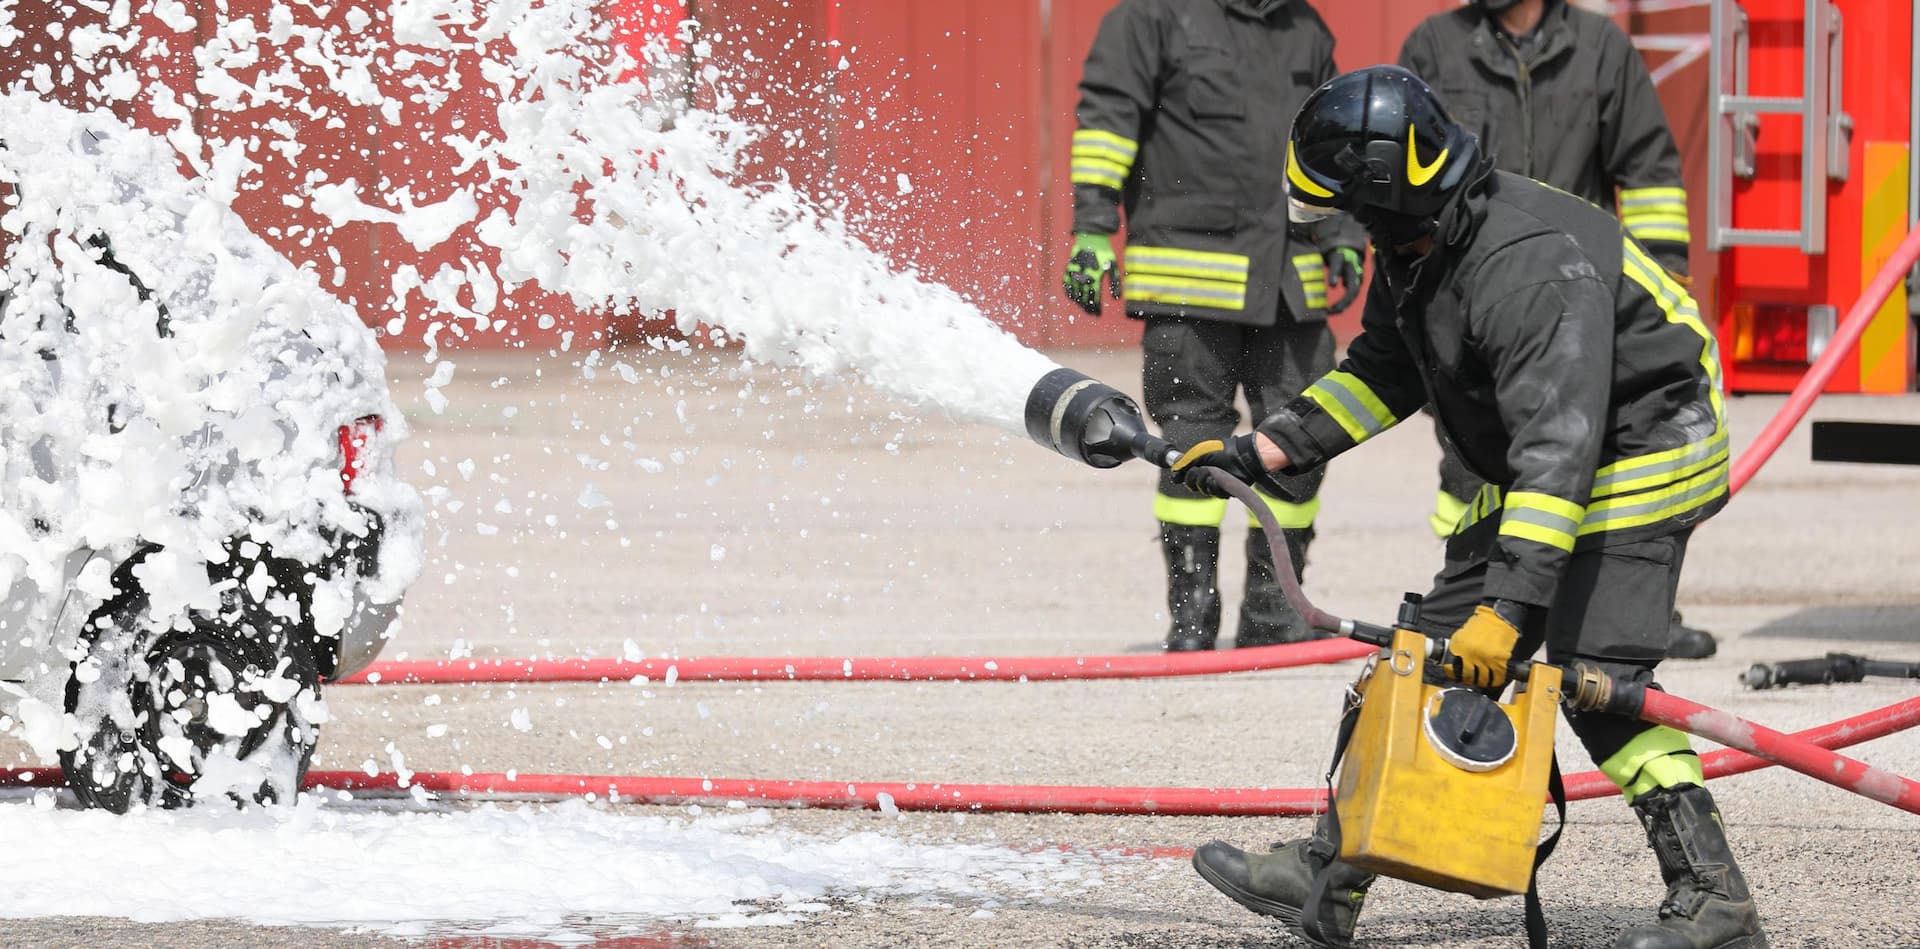 Firefighters using firefighting foam